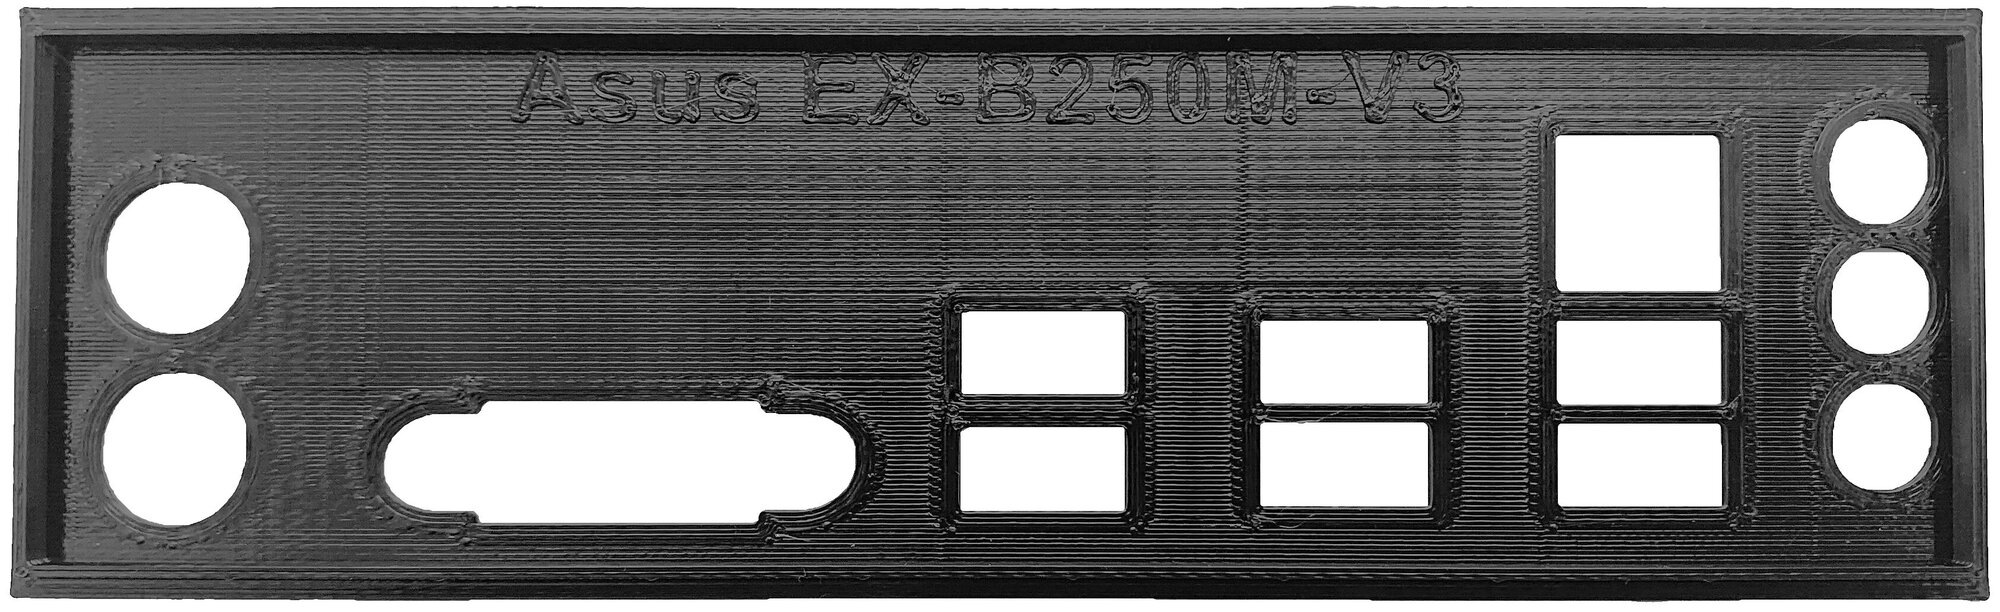 Заглушка для компьютерного корпуса к материнской плате Asus EX-B250M-V3 black